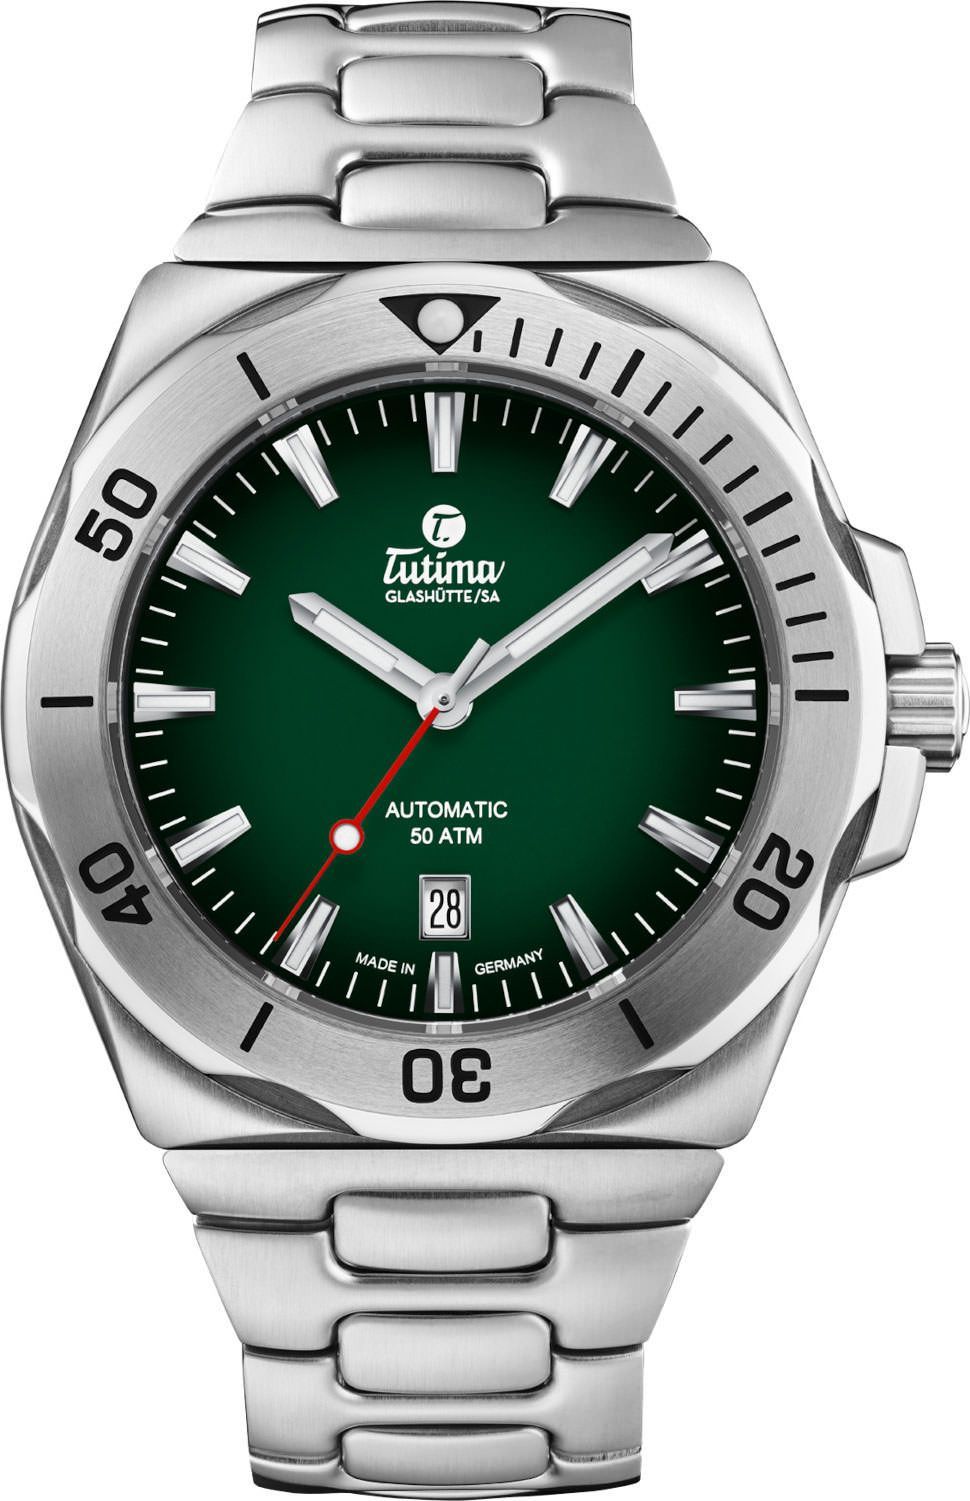 Tutima Glashütte Seven Seas S 44 mm Watch in Green Dial For Men - 1